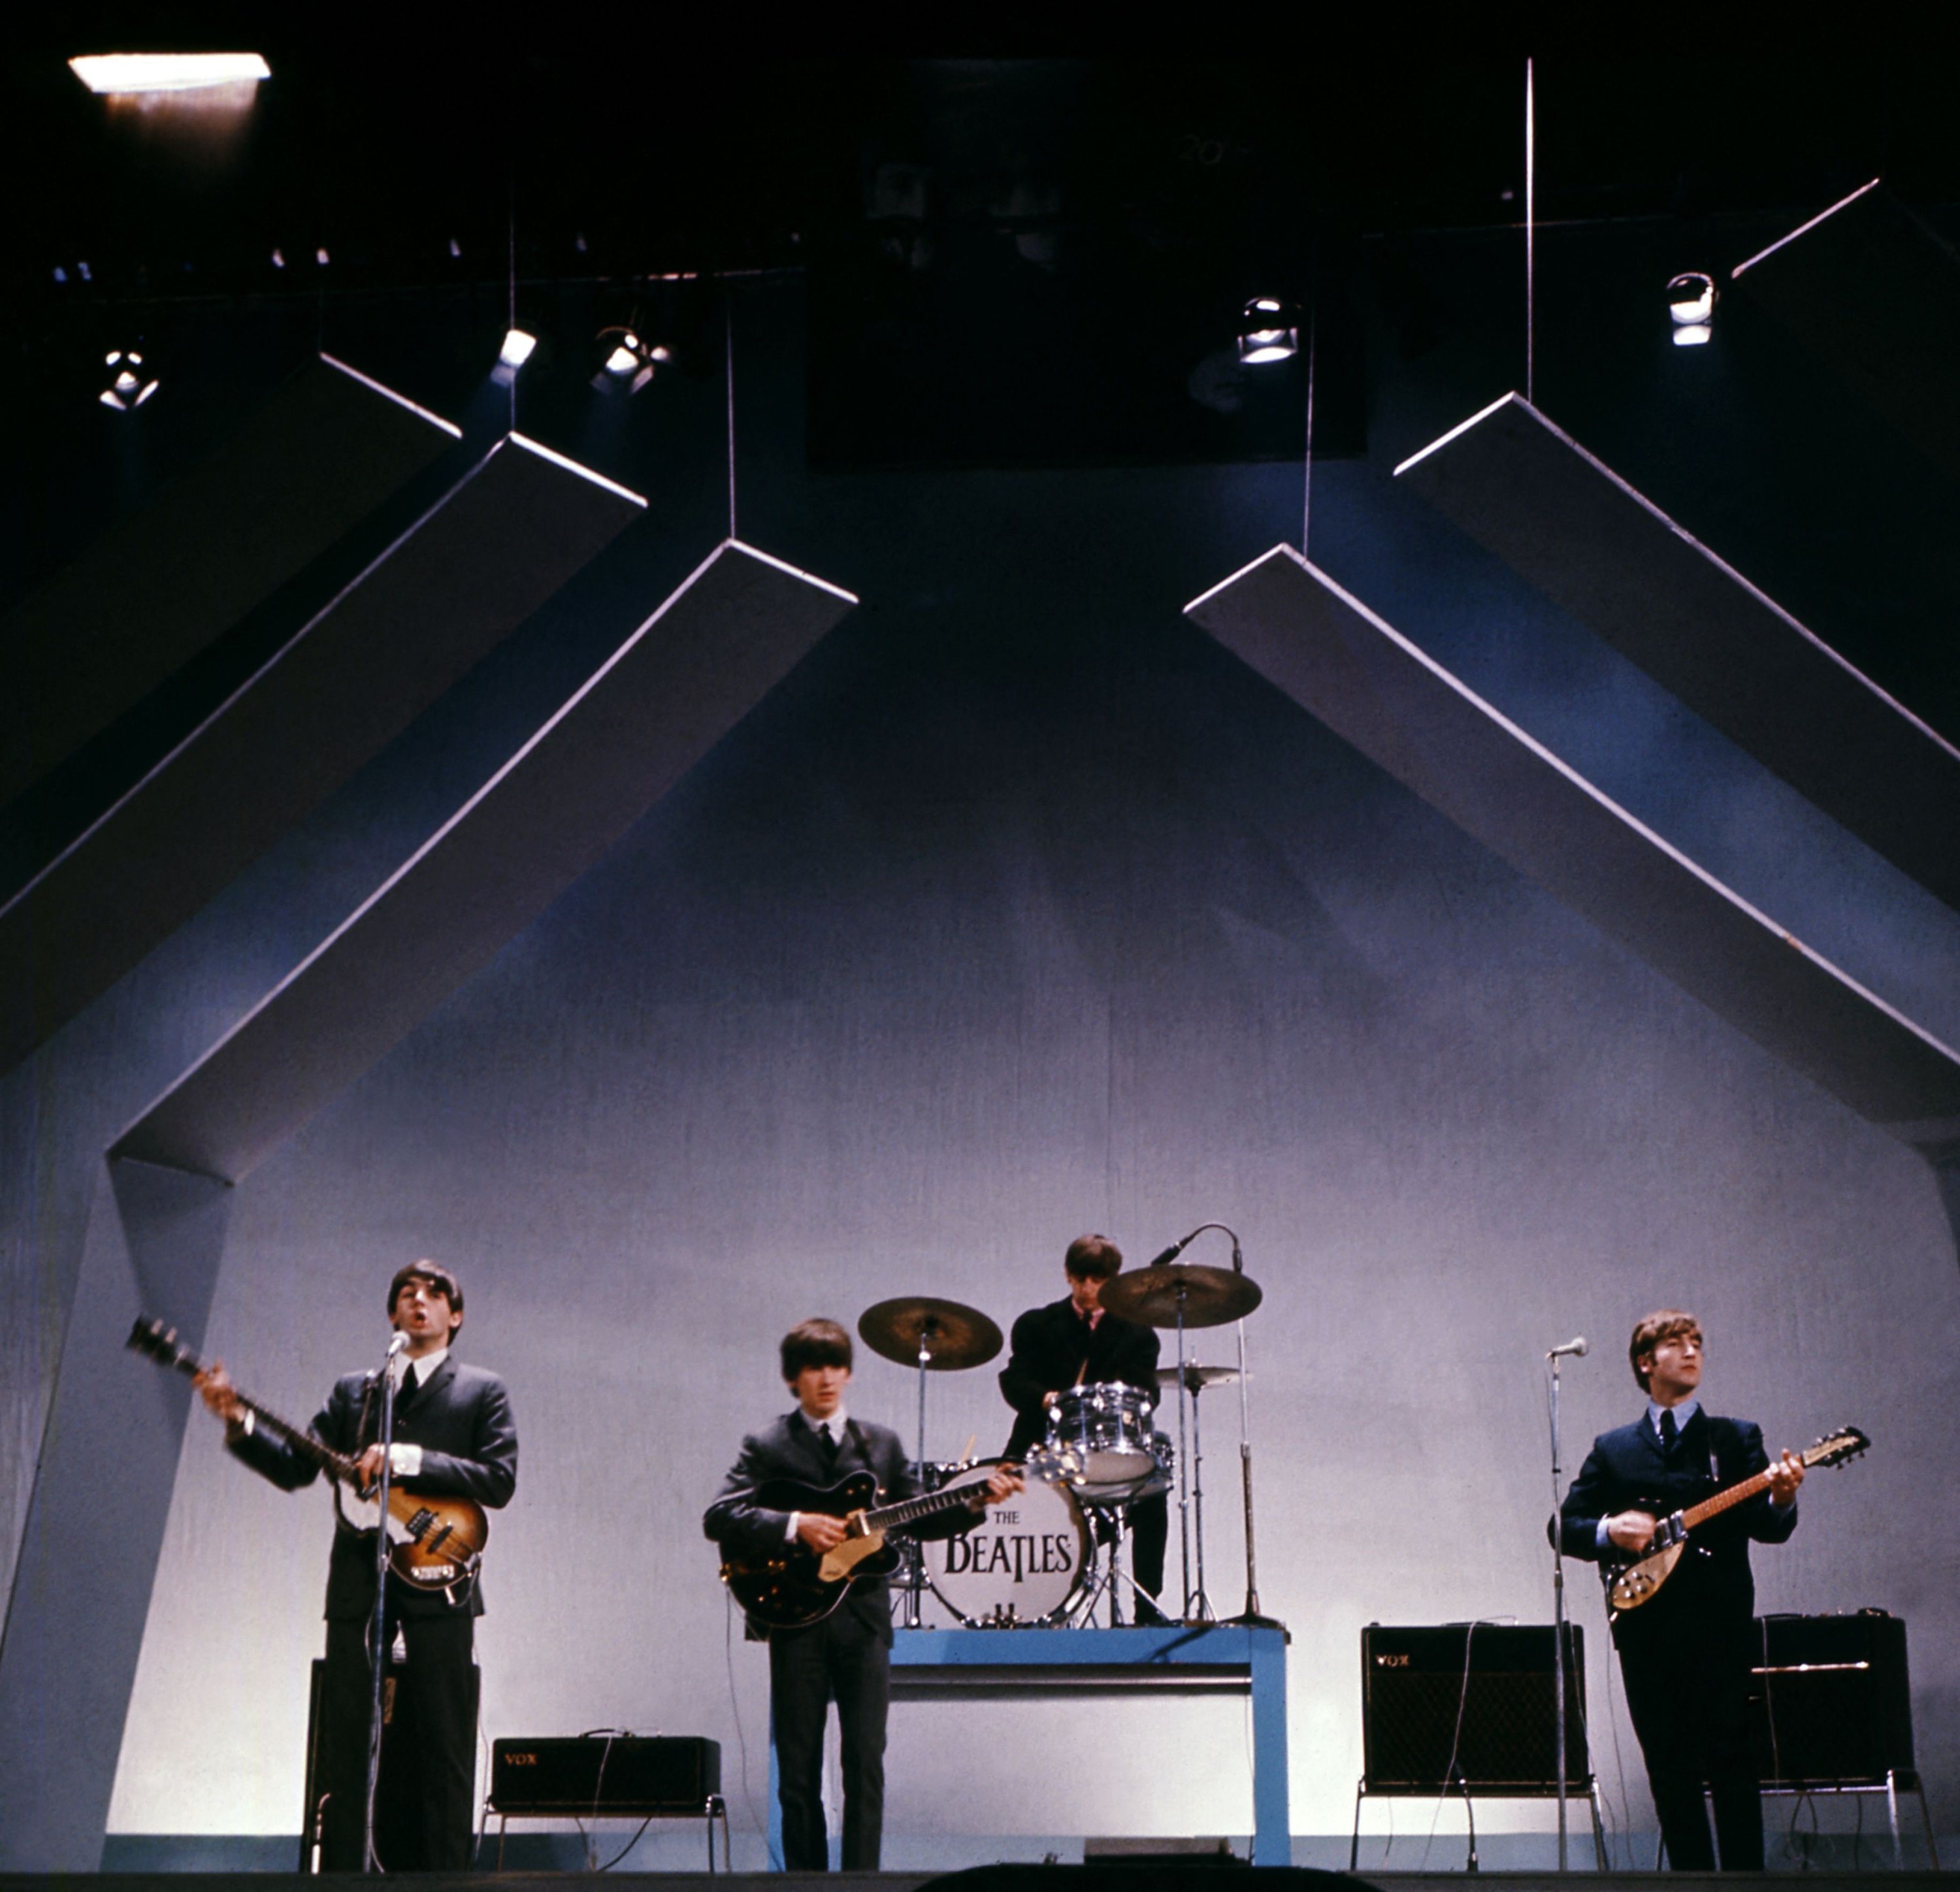 The Beatles (dari kiri) Paul McCartney (bass), George Harrison (gitar), Ringo Starr (drum) dan John Lennon (gitar) tampil di atas panggung saat konser di London, Inggris, 29 Juli 1965. (AFP File Photo)